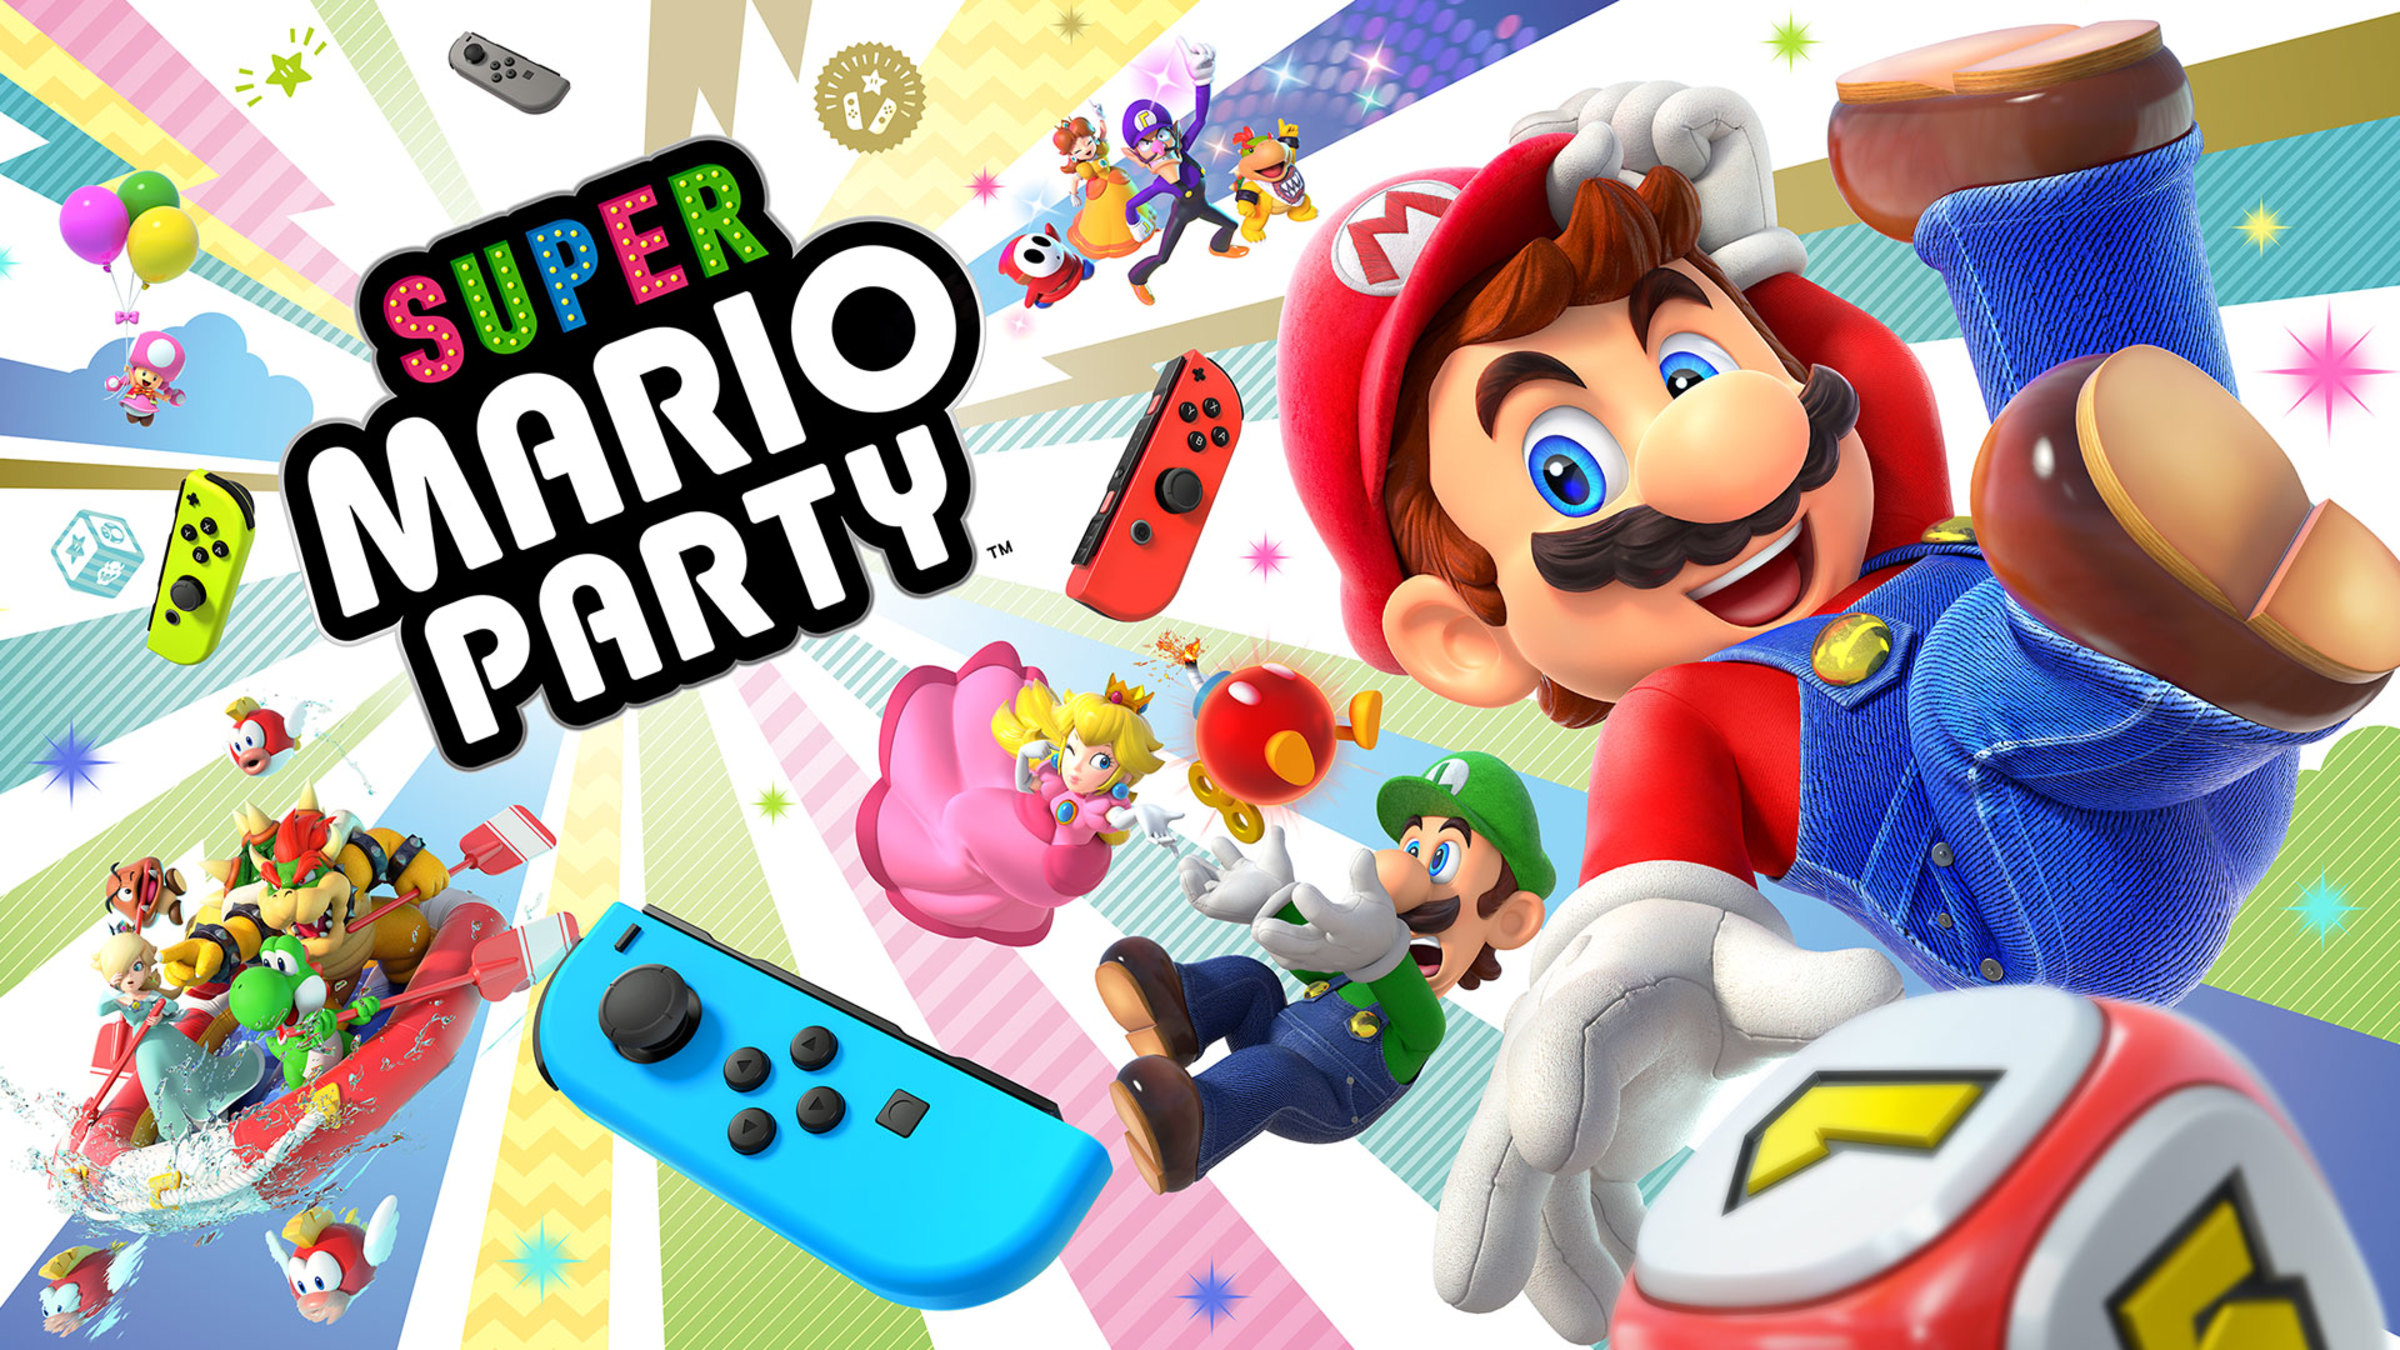 Sociable De ninguna manera semiconductor Super Mario Party™ para Nintendo Switch - Sitio oficial de Nintendo